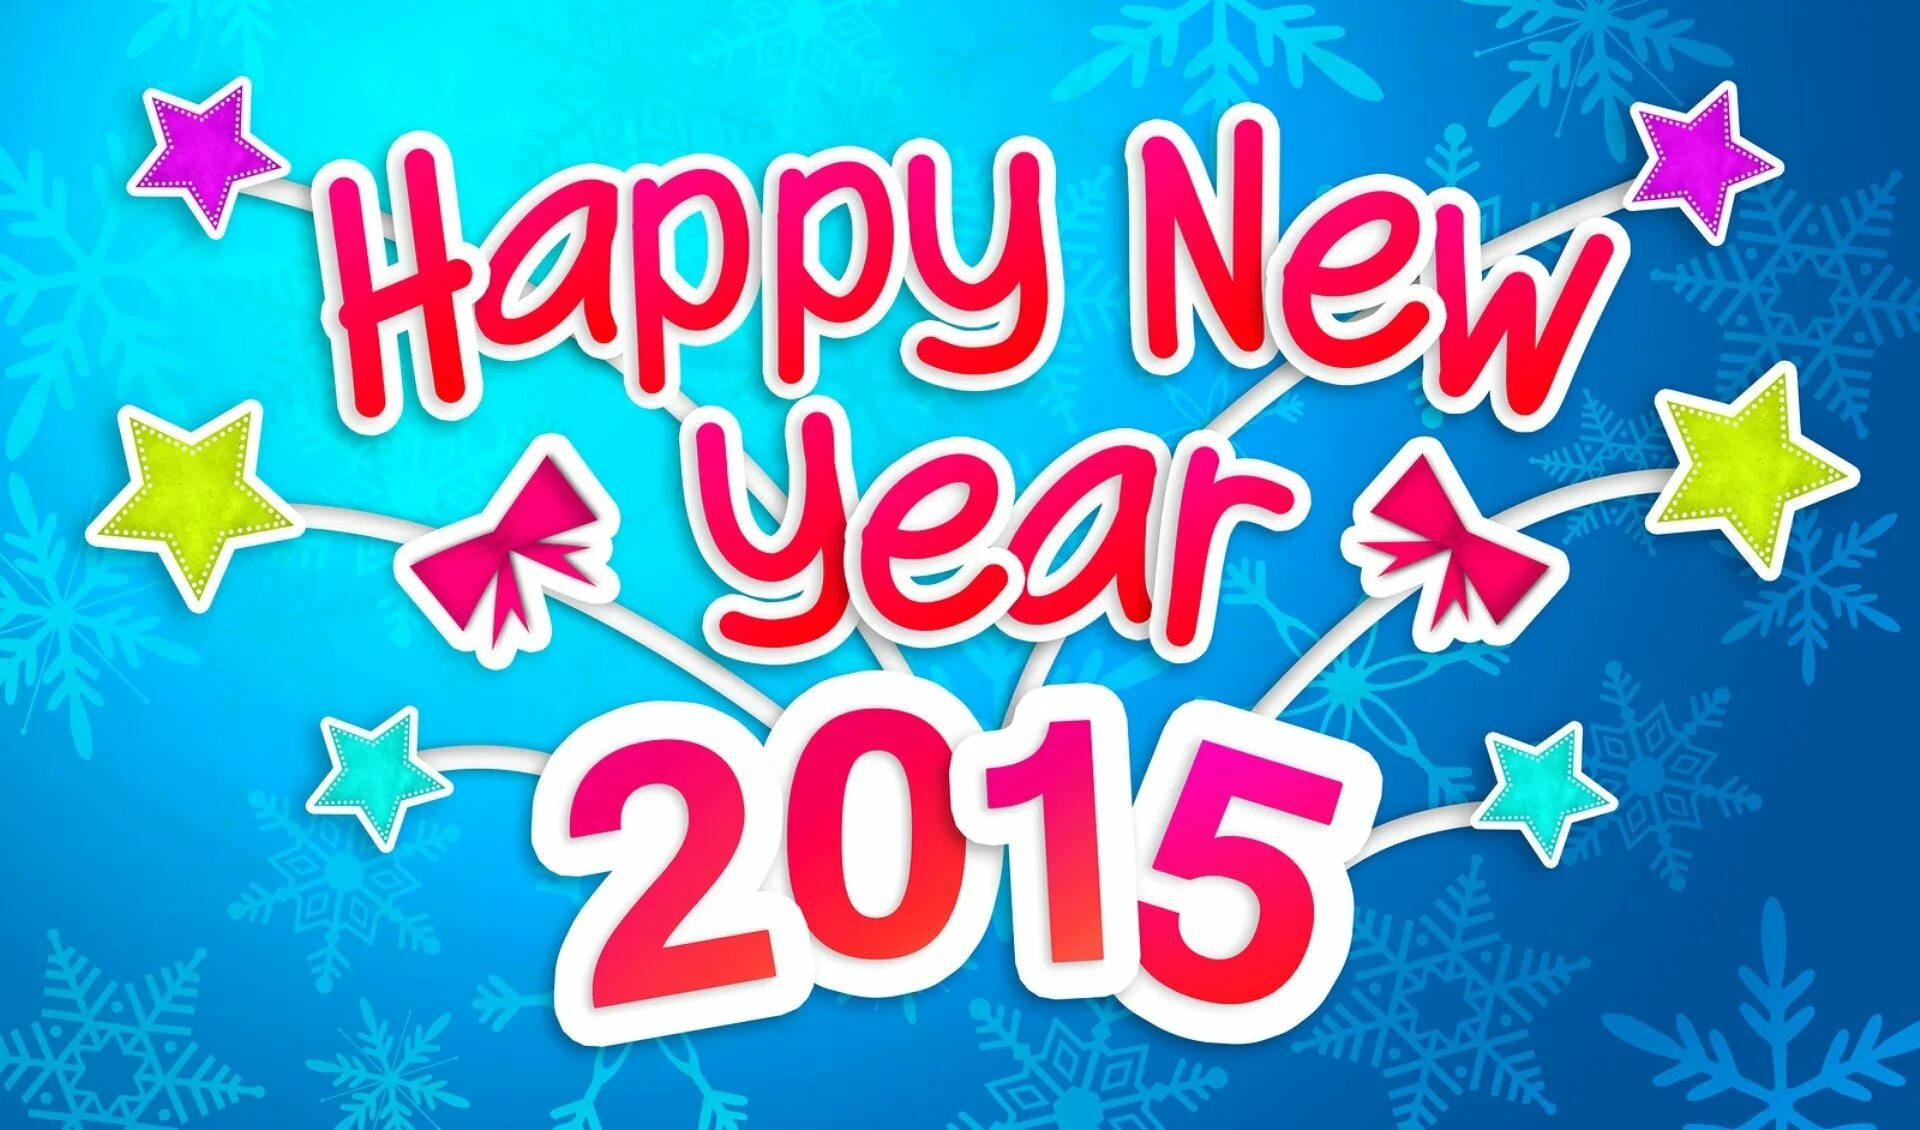 Happy new year be happy. Happy New year Happy New year. Happy New year 2015. Нарру New year. Поздравление с новым годом на английском.